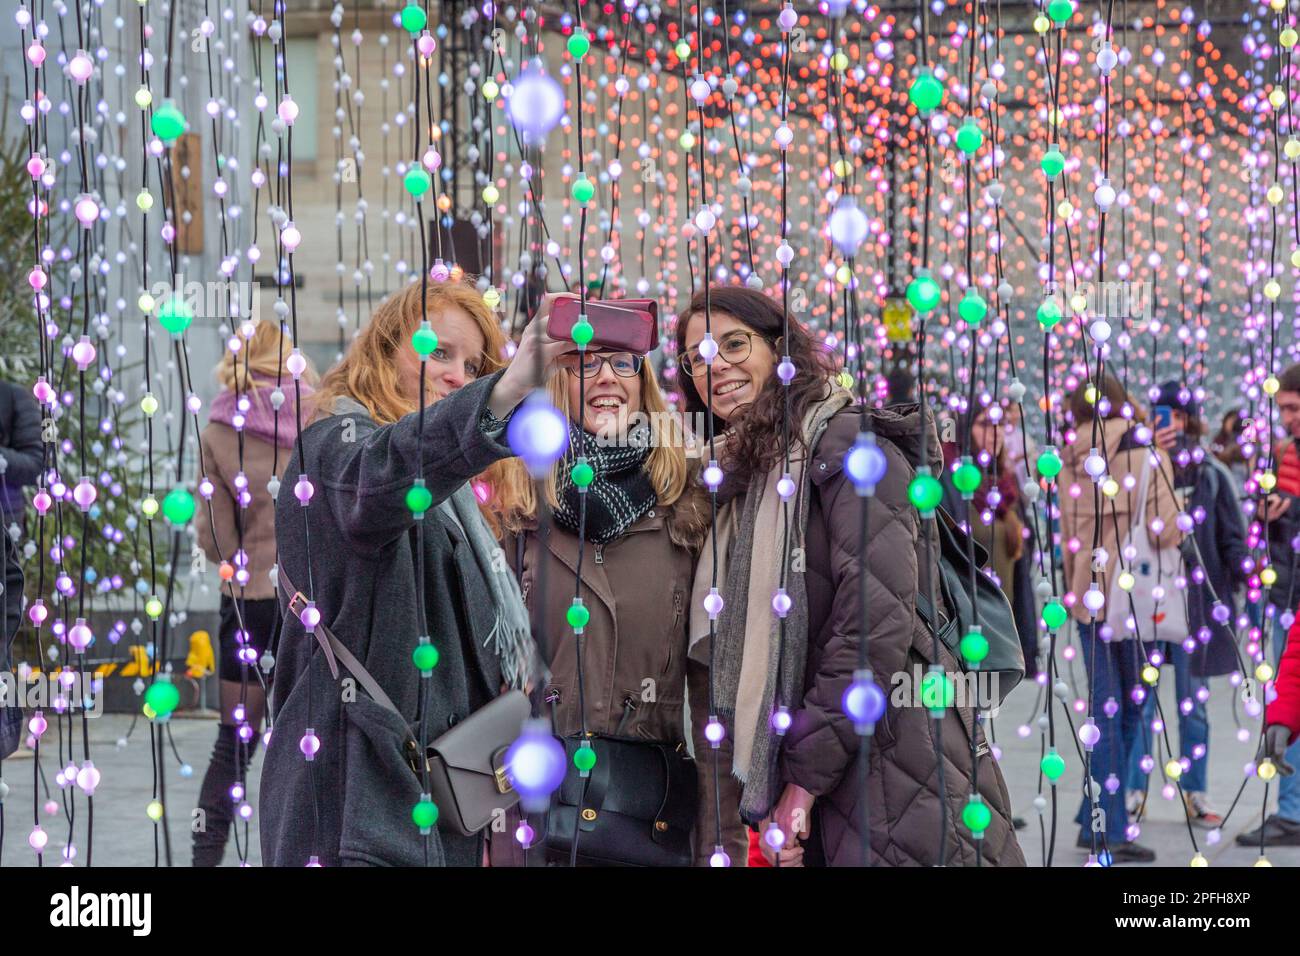 Lichtspiele im Mont-des Arts in Brüssel anlässlich der Lichterkundungen zum Jahresende. Drei Frauen machen ein Selfie. Stockfoto